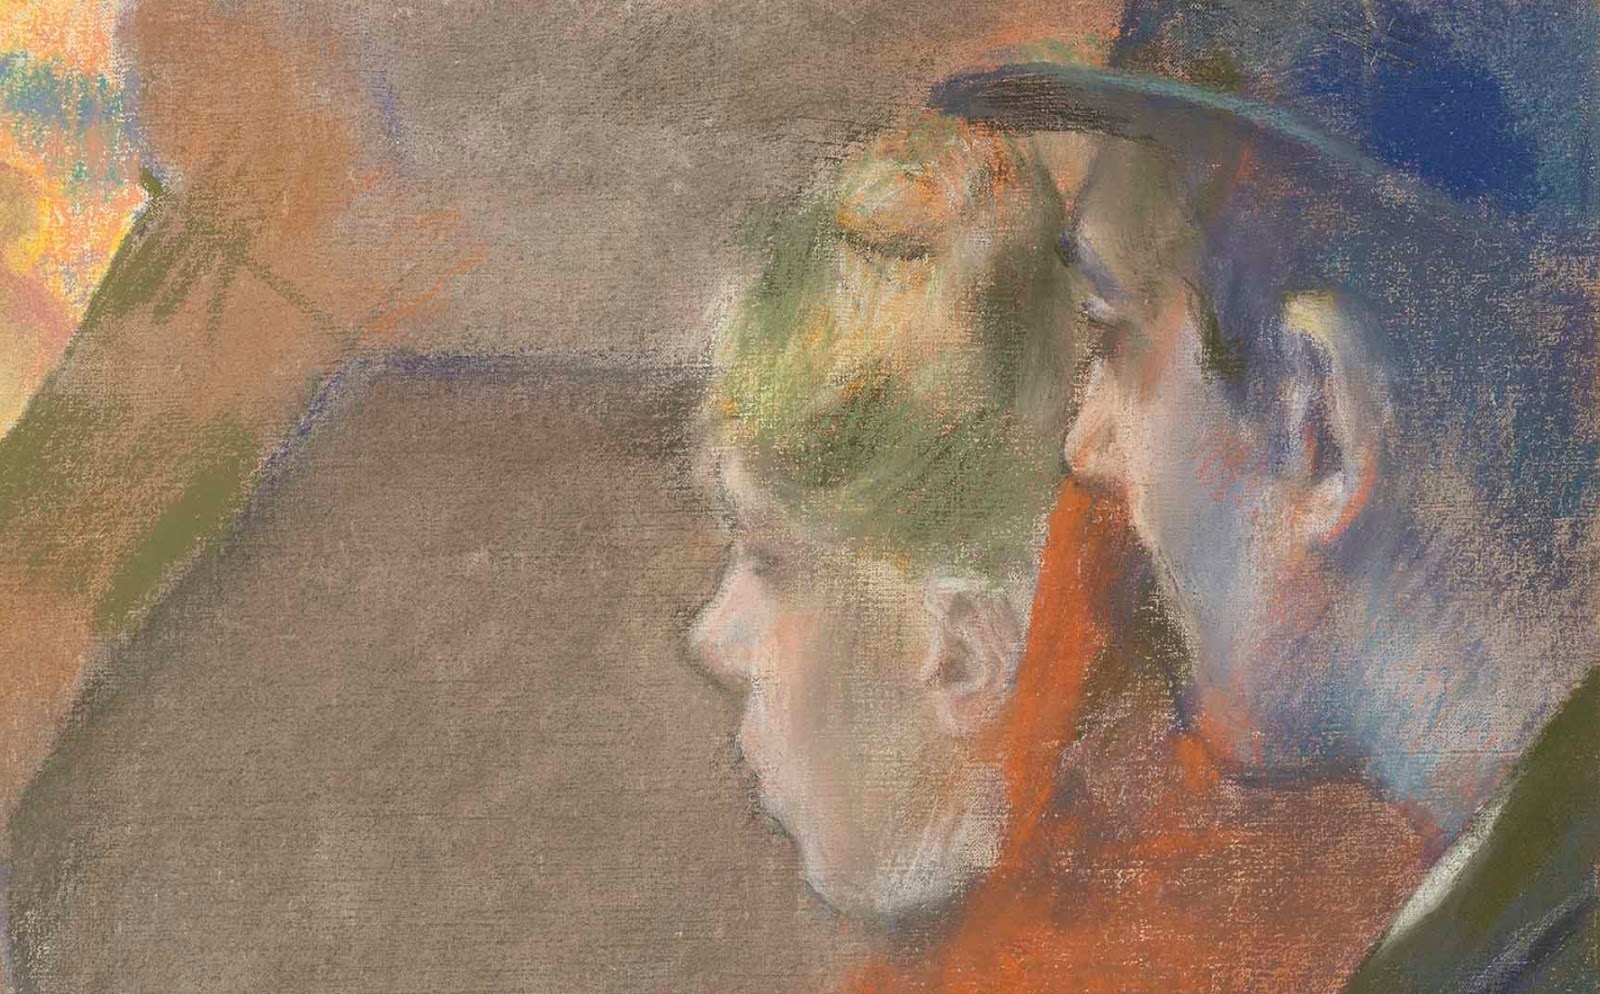 Edgar+Degas-1834-1917 (843).jpg